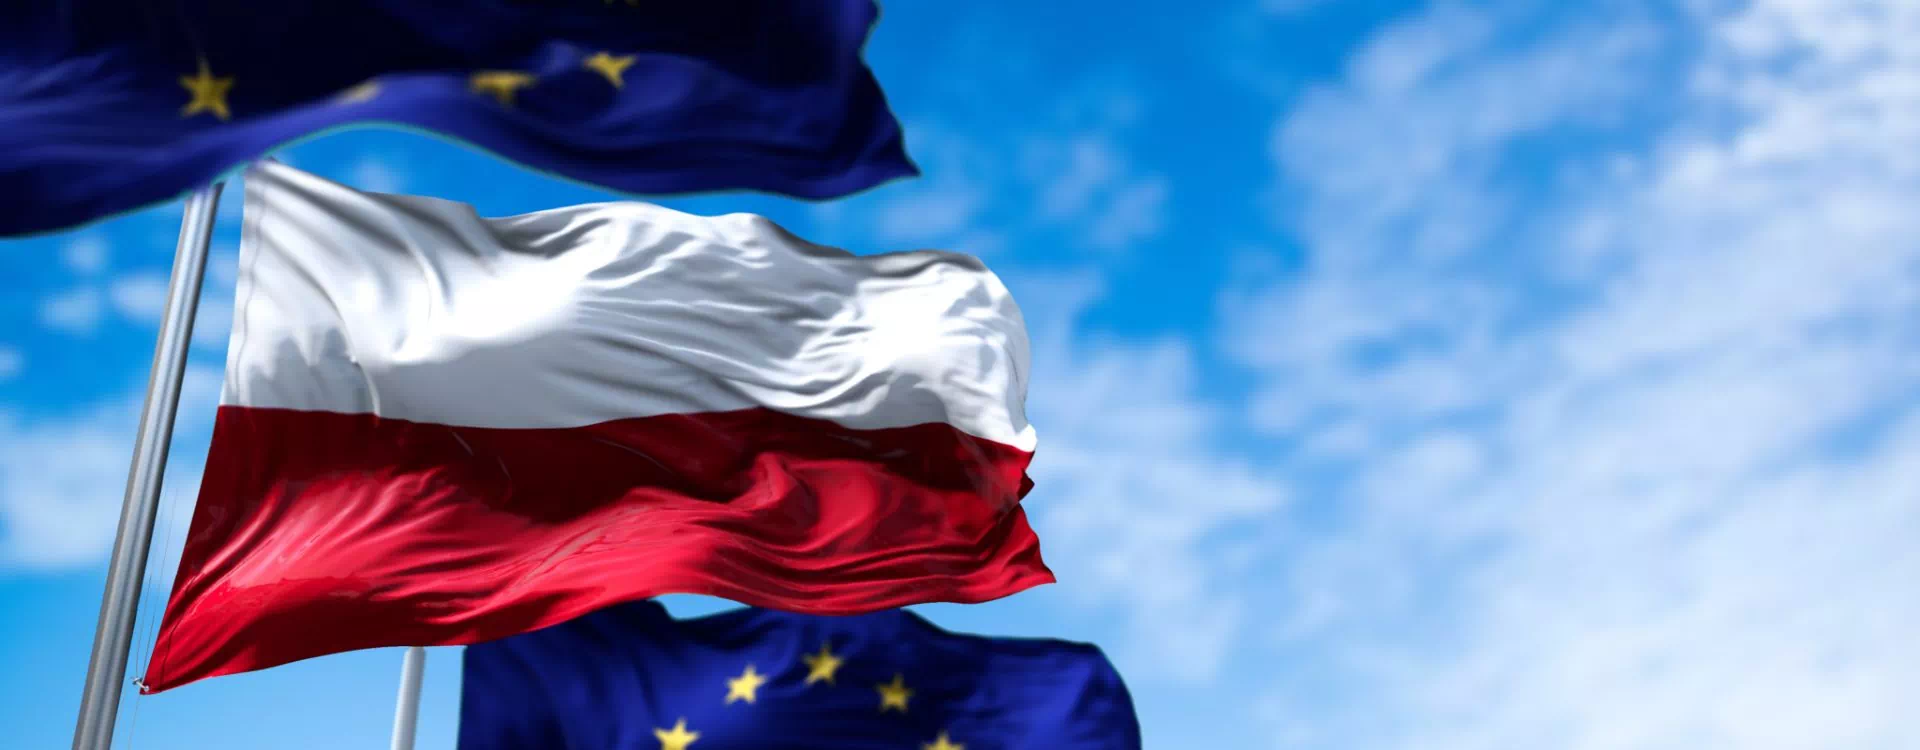 Flaga Polski i UE